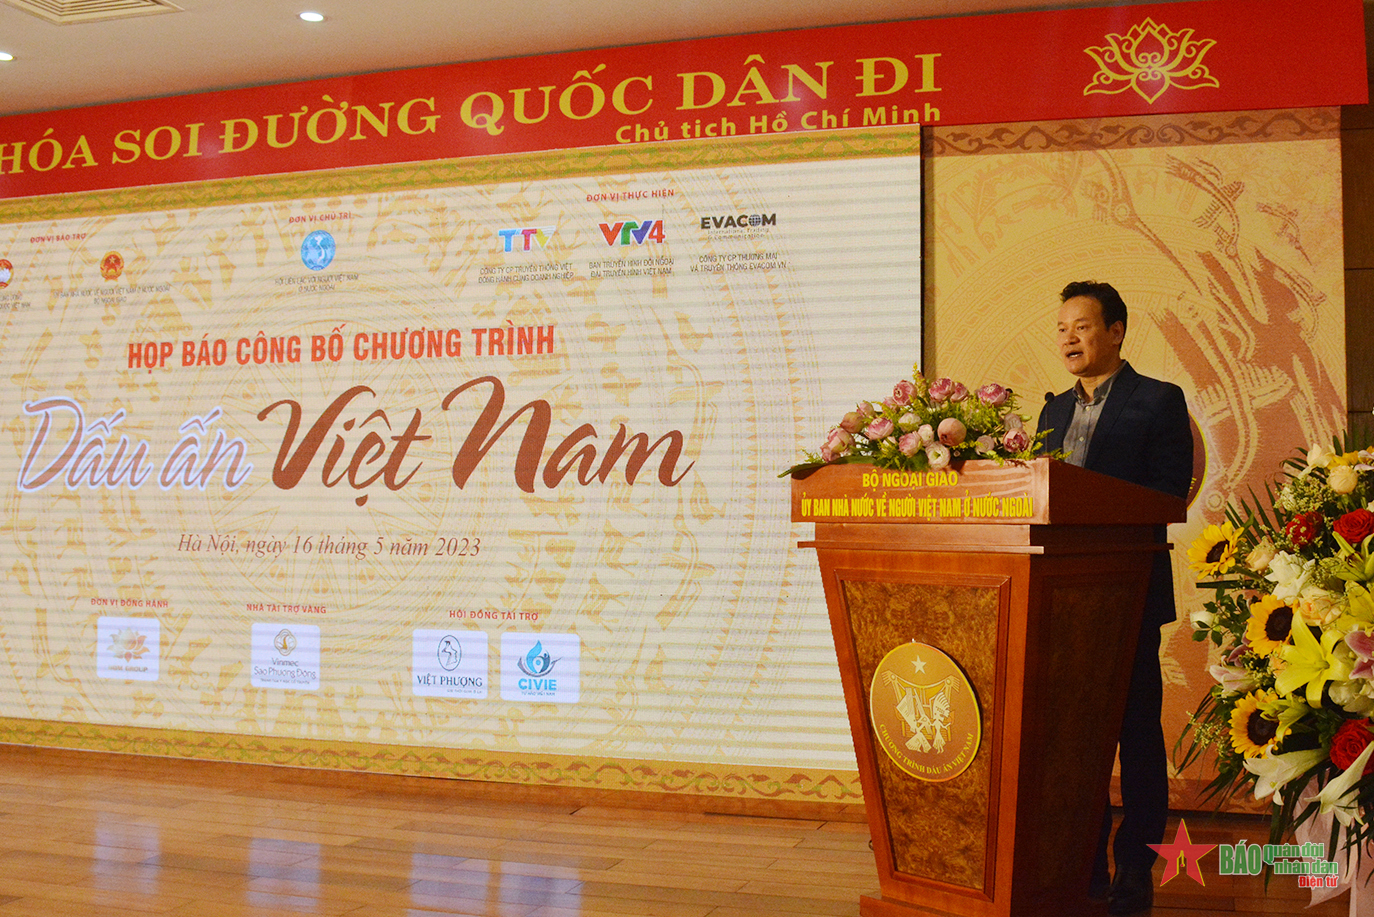 Chương trình “Dấu ấn Việt Nam” tôn vinh giá trị Việt